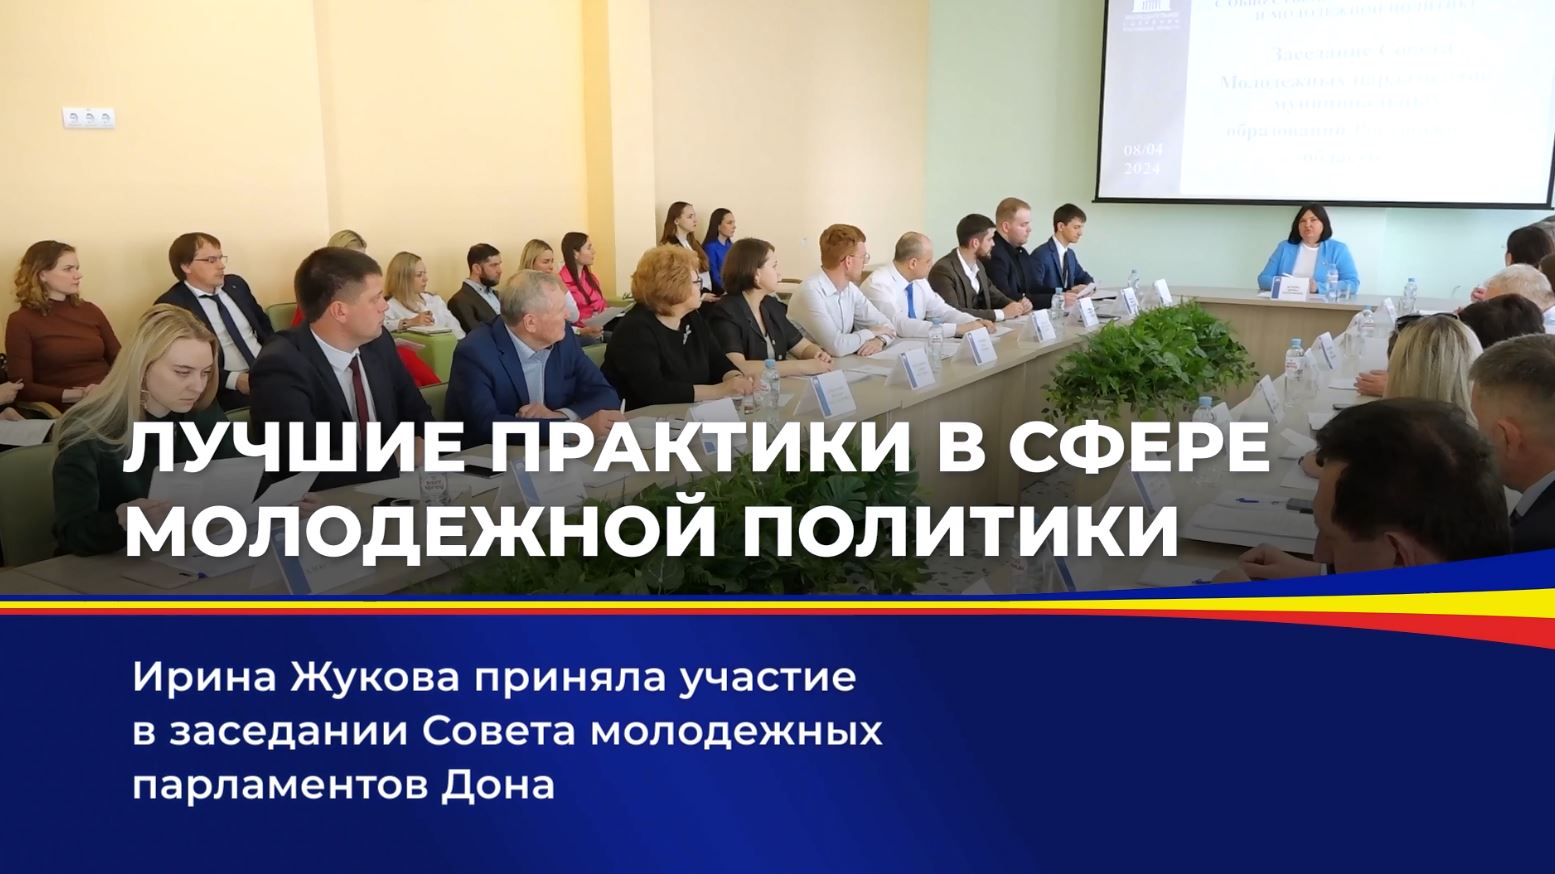 Ирина Жукова приняла участие в заседании Совета молодежных парламентов Дона